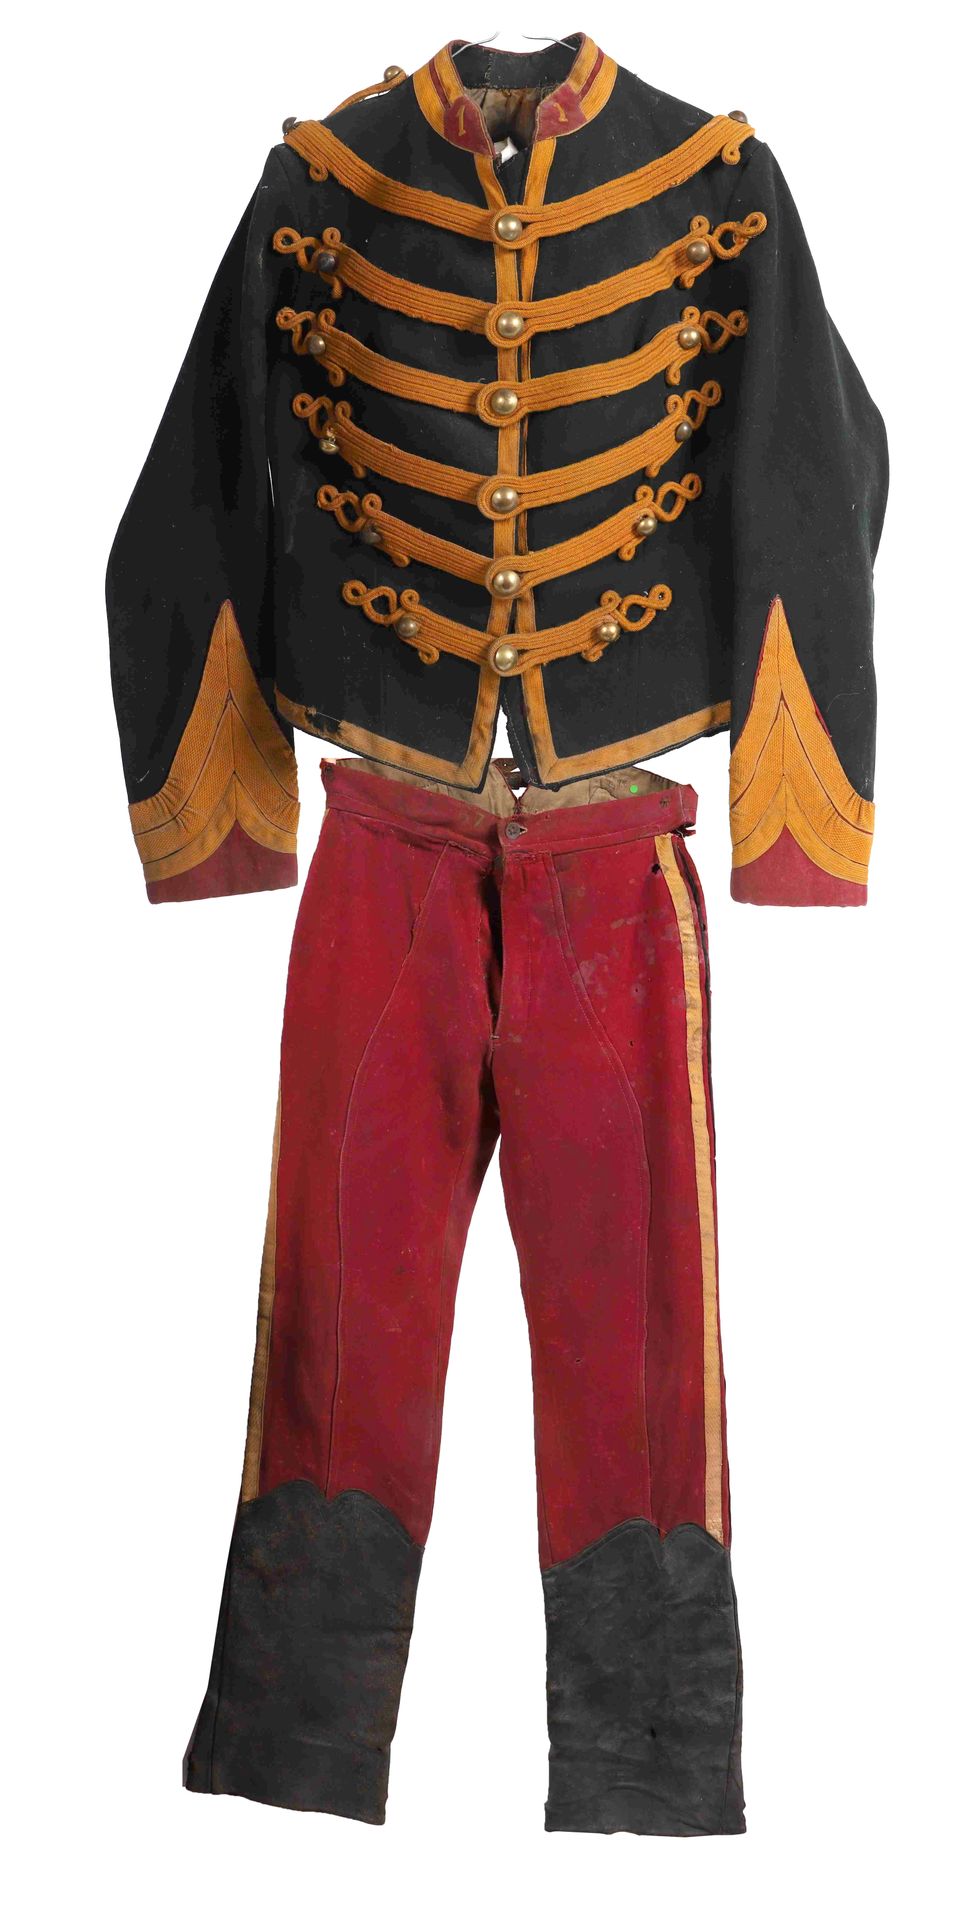 Null Dolman y los pantalones del Brigadier del I Regimiento de Guías

1900

Bélg&hellip;